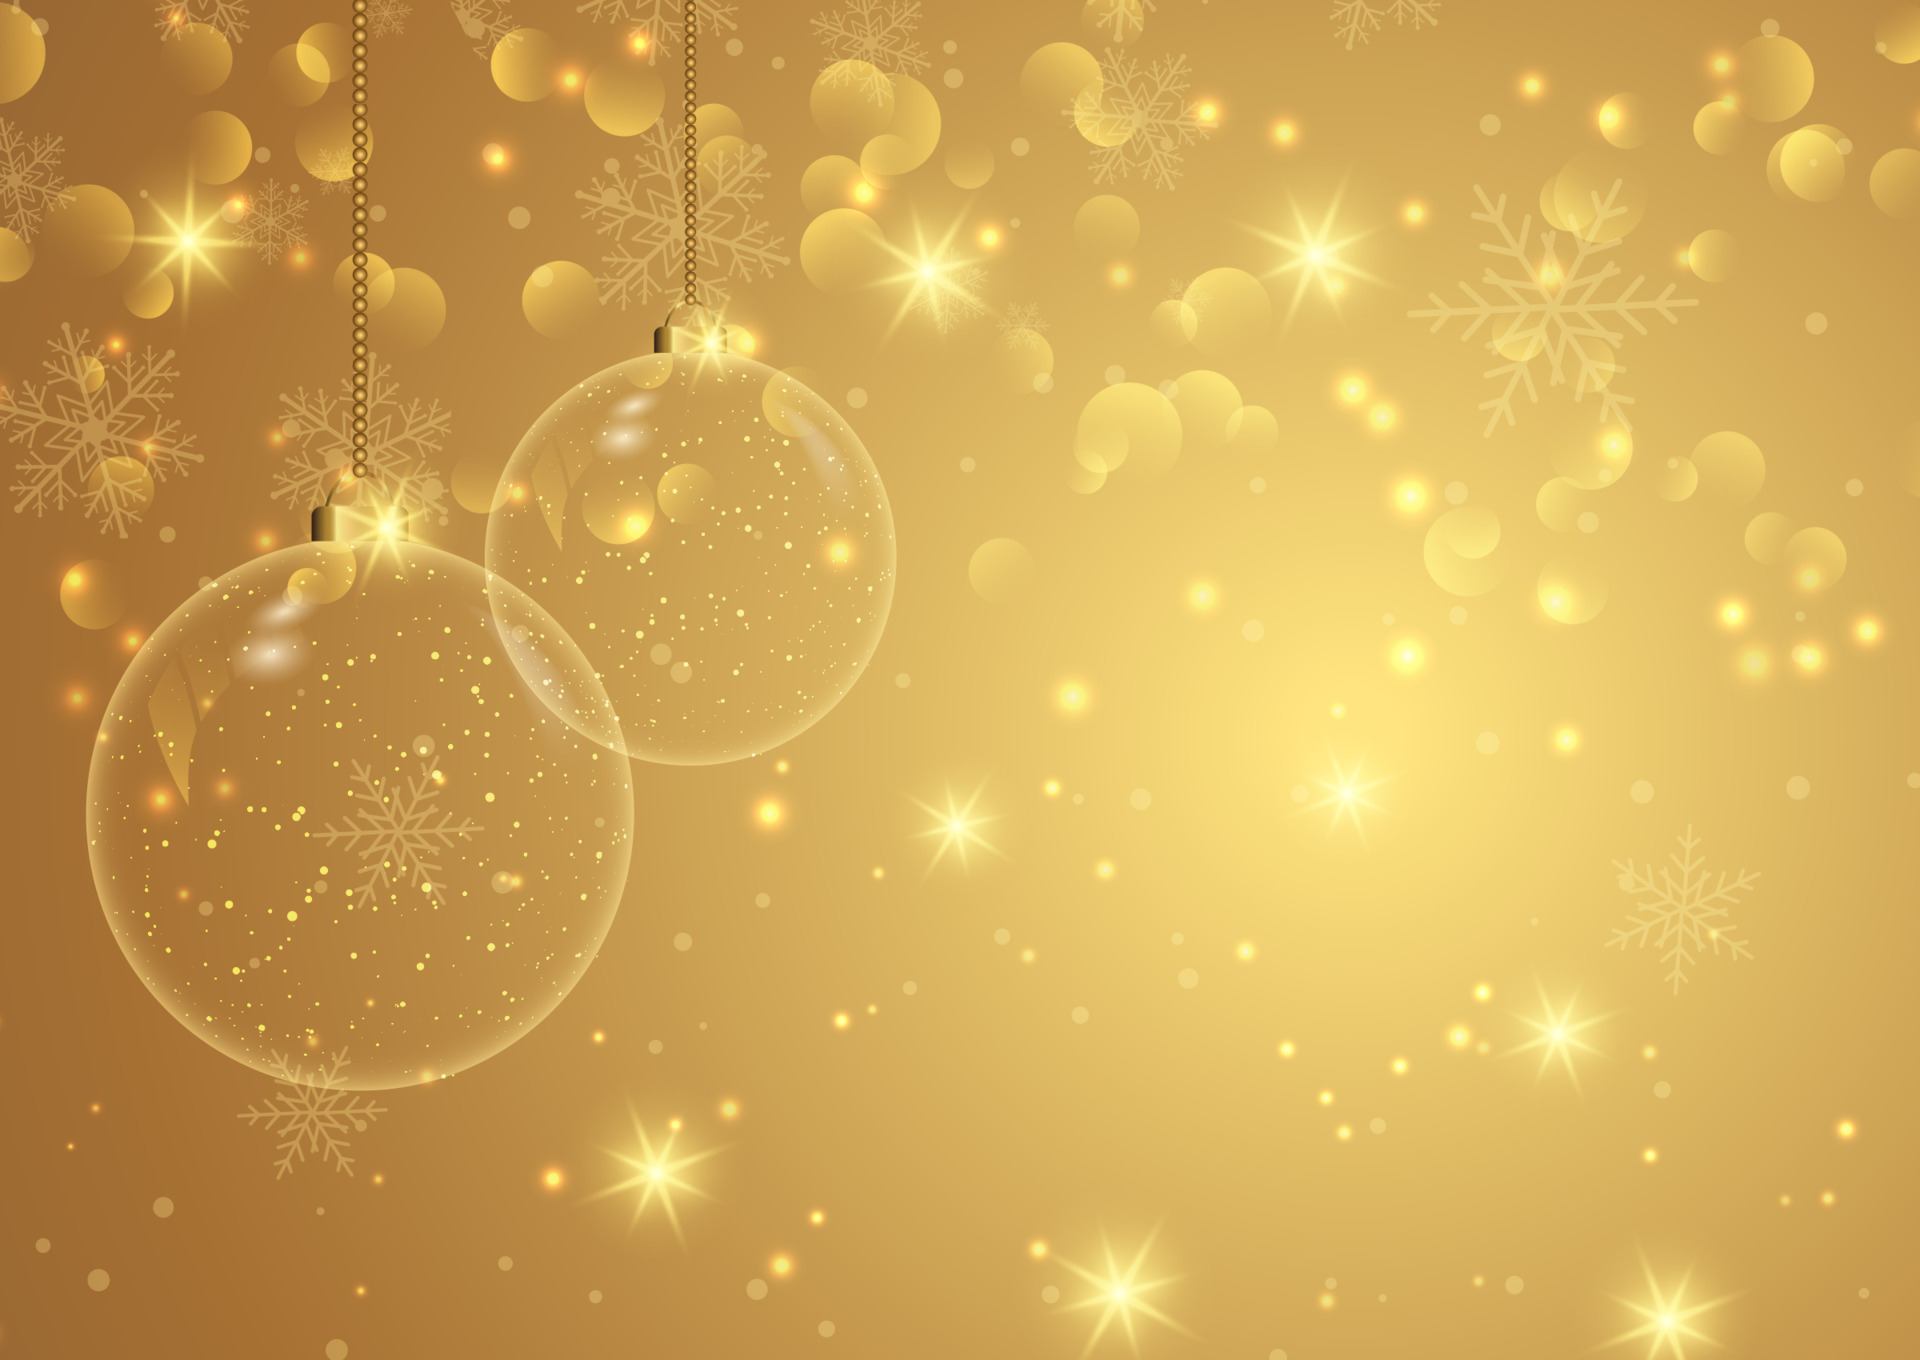 Hình nền Noel vàng óng ánh với quả cầu treo 4026457 Vector sẽ khiến bạn yêu thích và muốn sự xoay quanh của mùa lễ này. Với thiết kế độc đáo và phù hợp với nhiều loại không gian, bức ảnh chắc chắn sẽ làm cho mùa lễ của bạn trở nên đặc biệt và bắt mắt hơn.